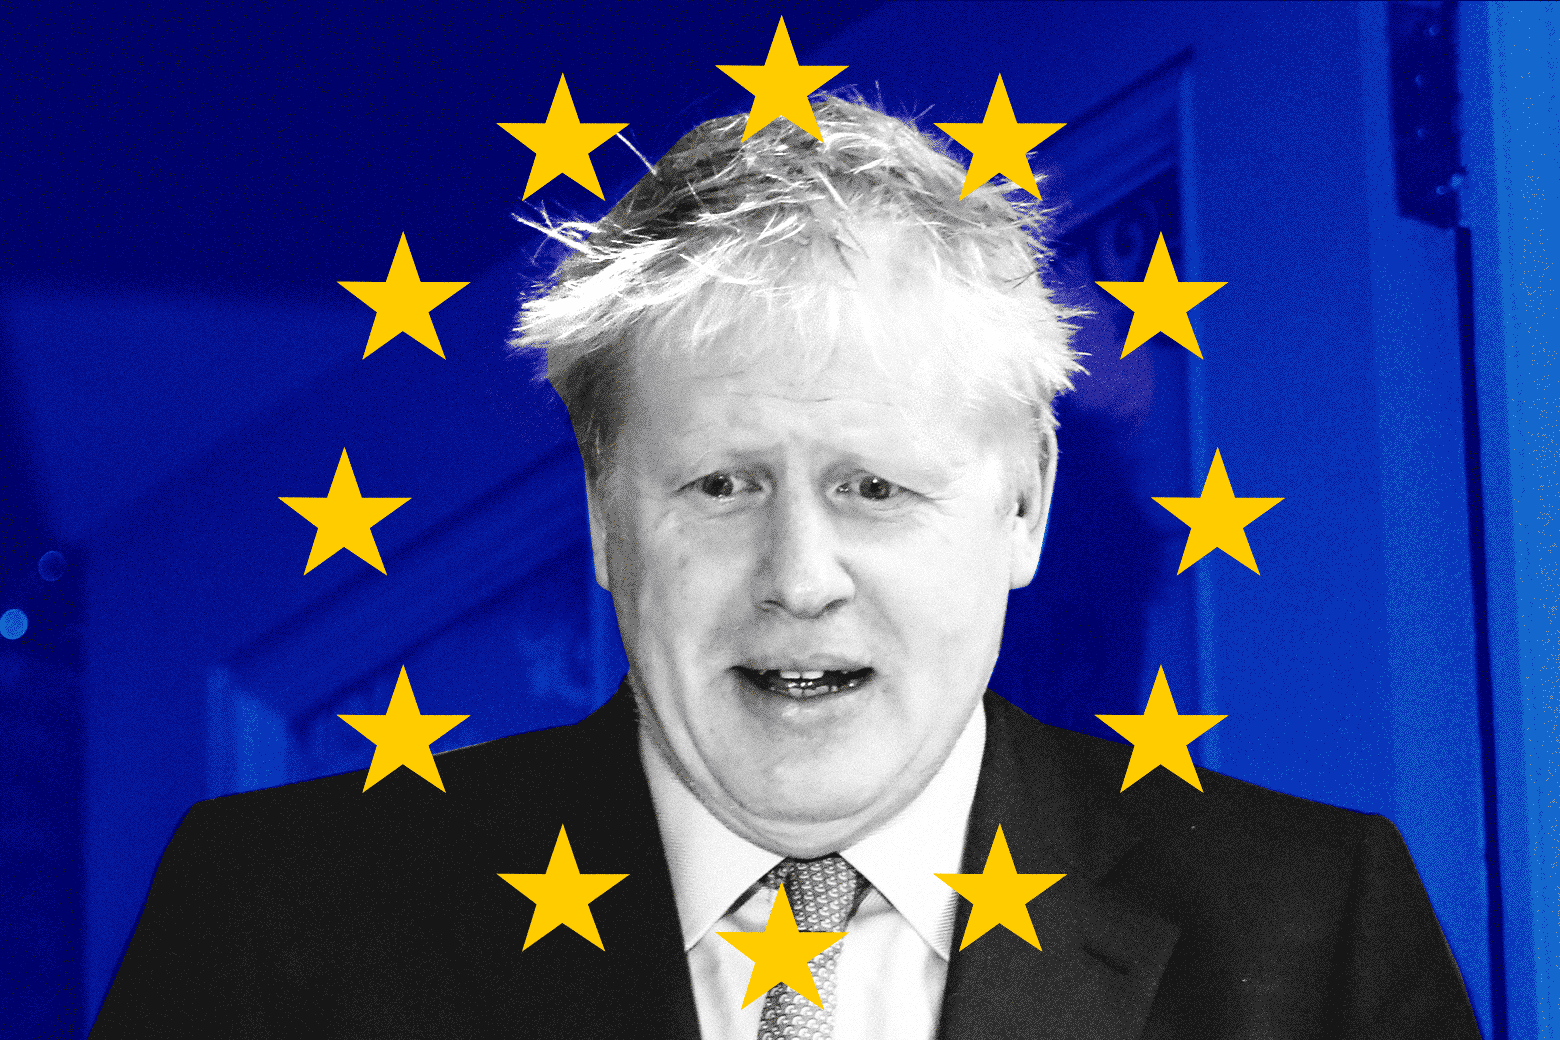 Boris Johnson overlaid with the EU flag, one star blinking.